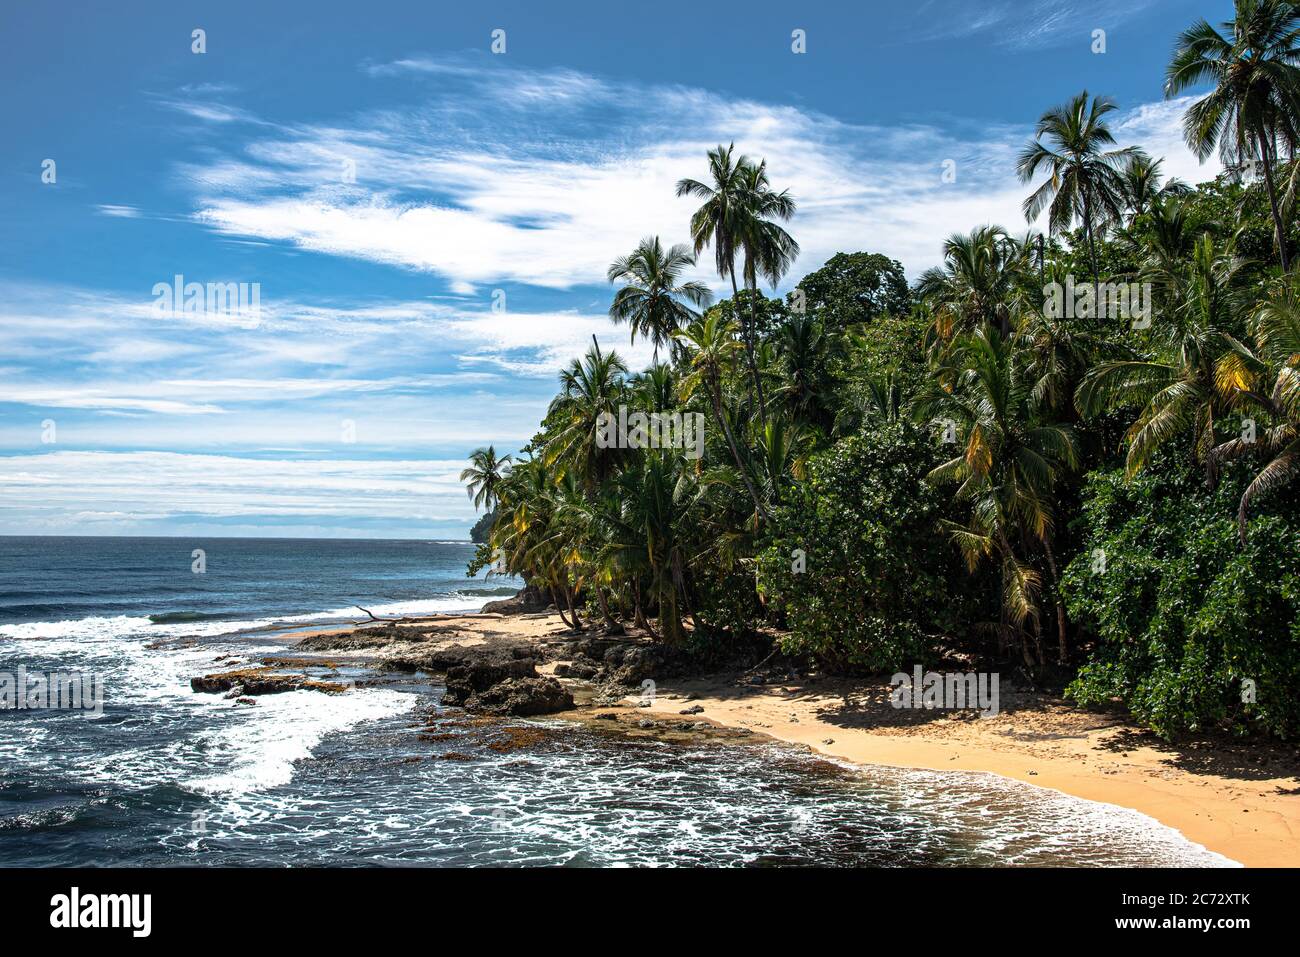 Wilder karibikstrand, roher Dschungel Regenwald Strand, Manzanillo Puerto Viejo Costa Rica, Mittellateinamerika blauer Himmel Meer Wasser Ozean, verpassen kann Punkt Stockfoto